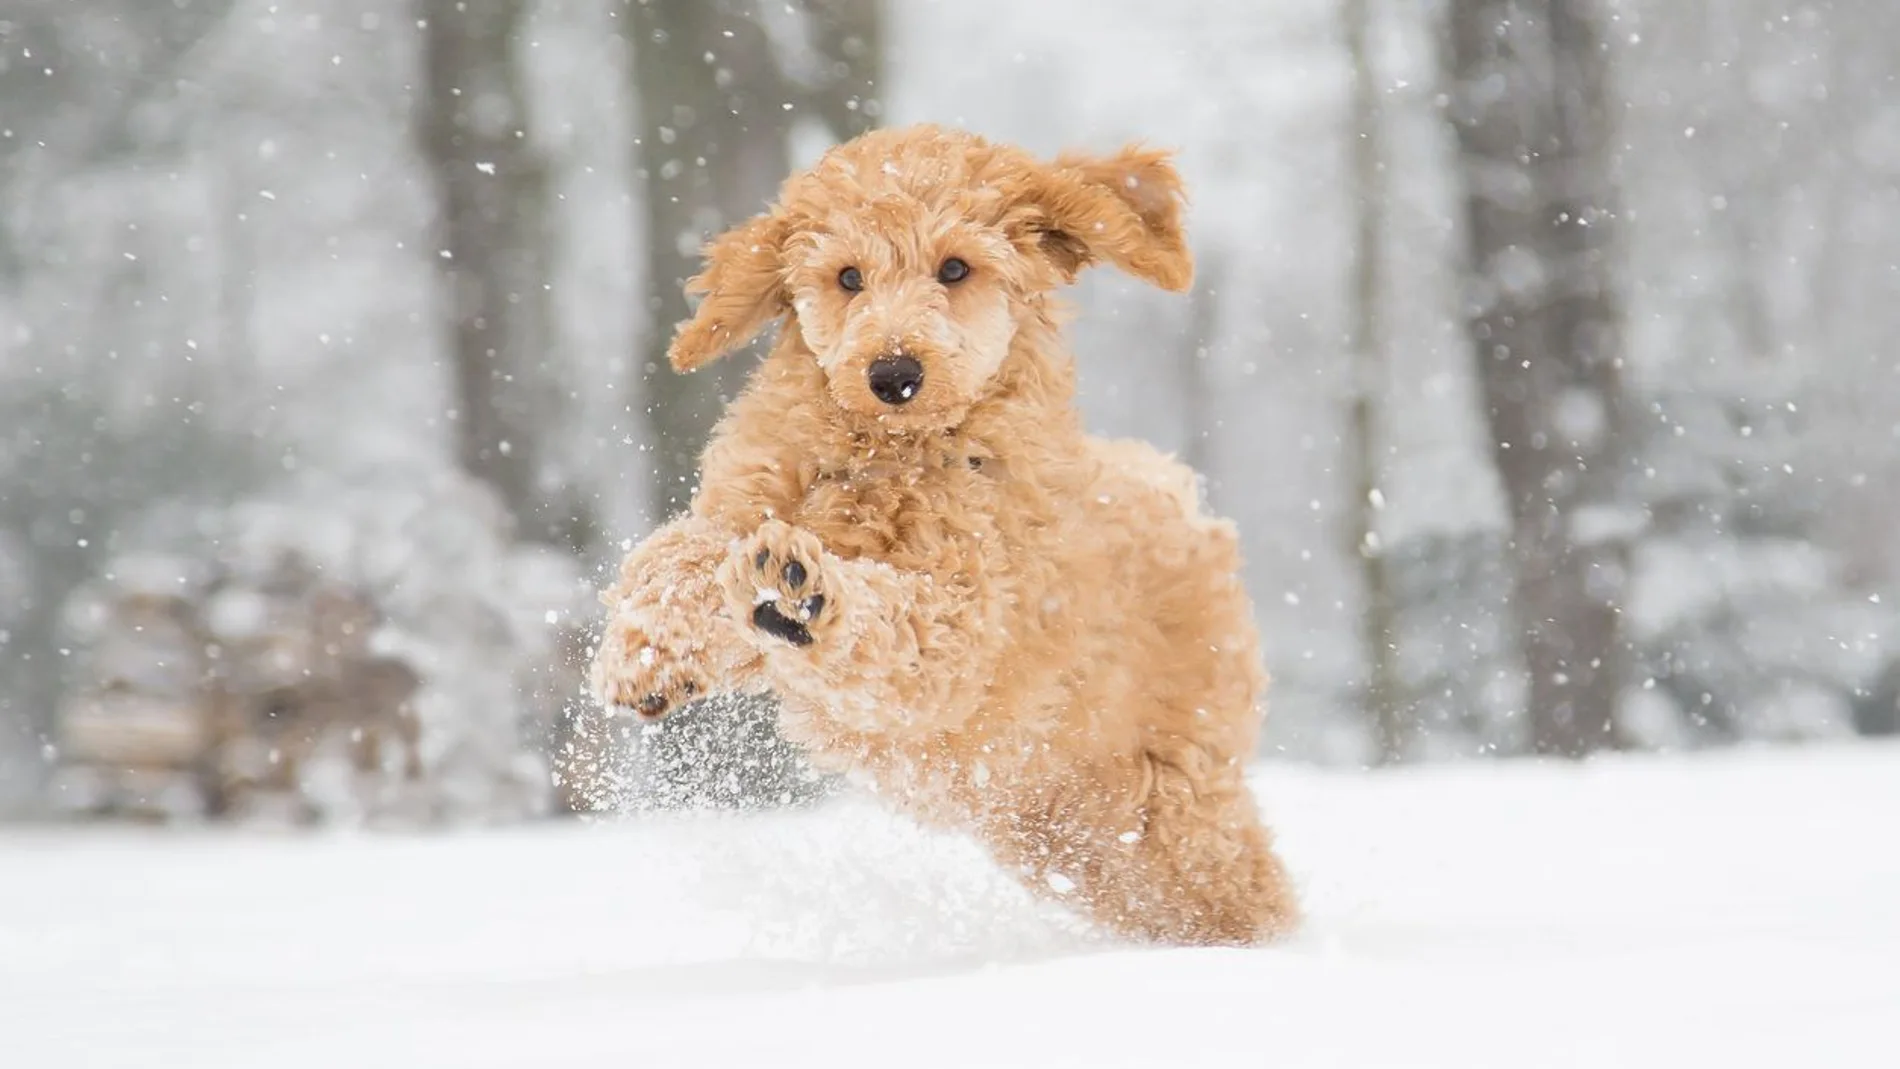 Los animales, al igual que los humanos, también pueden sufrir problemas relacionados con el frío extremo y la nieve.